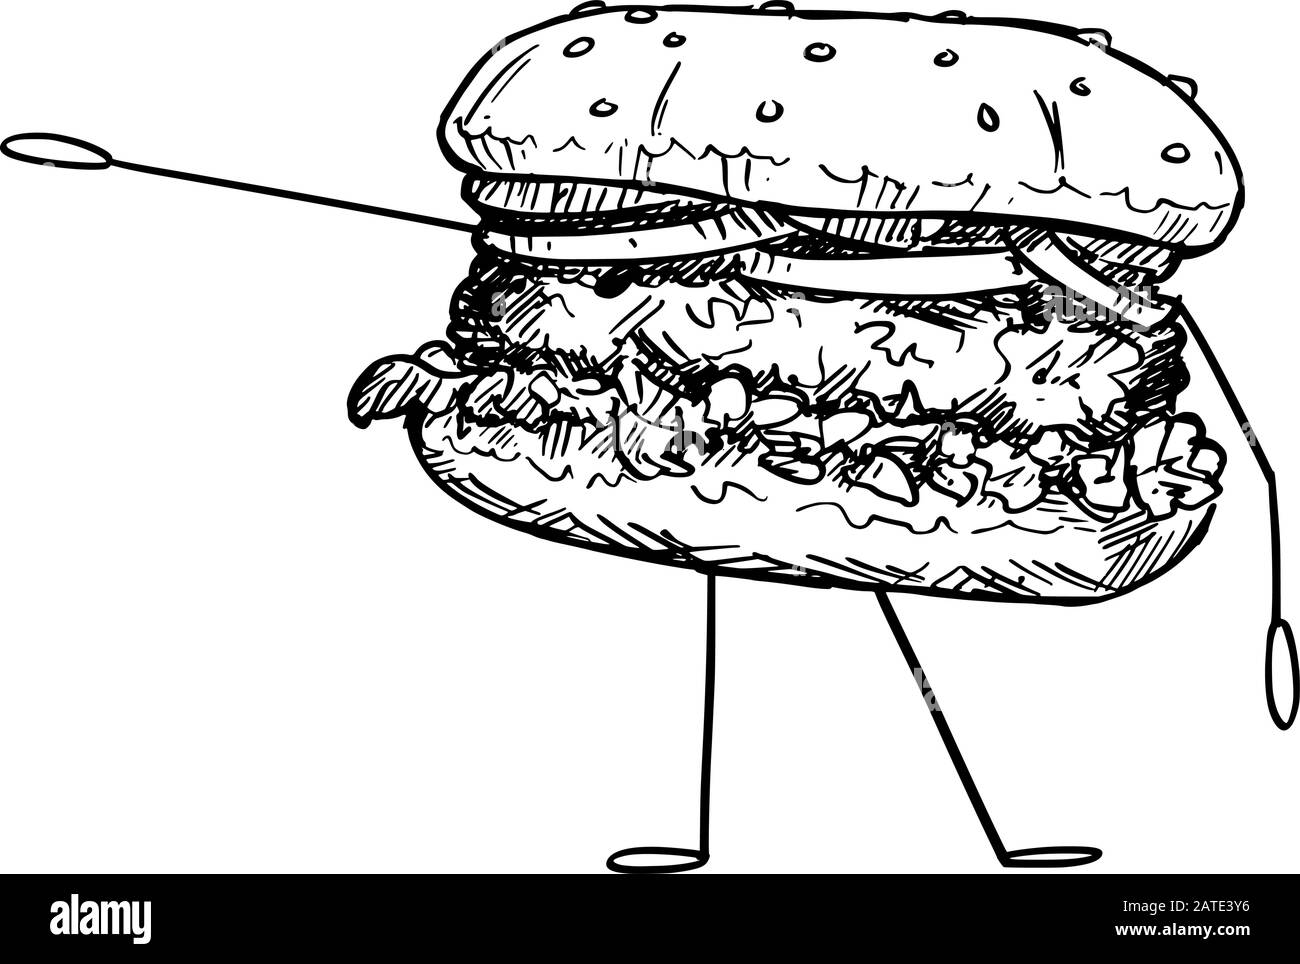 Vektorgrafiken von Cartoon-Hamburgern oder Burger-Figuren, die etwas von Hand zeigen oder darauf zeigen. Gesunder Lebensstil und Werbung für Junk- oder Fast-Food-Werbung oder Marketingdesign. Stock Vektor